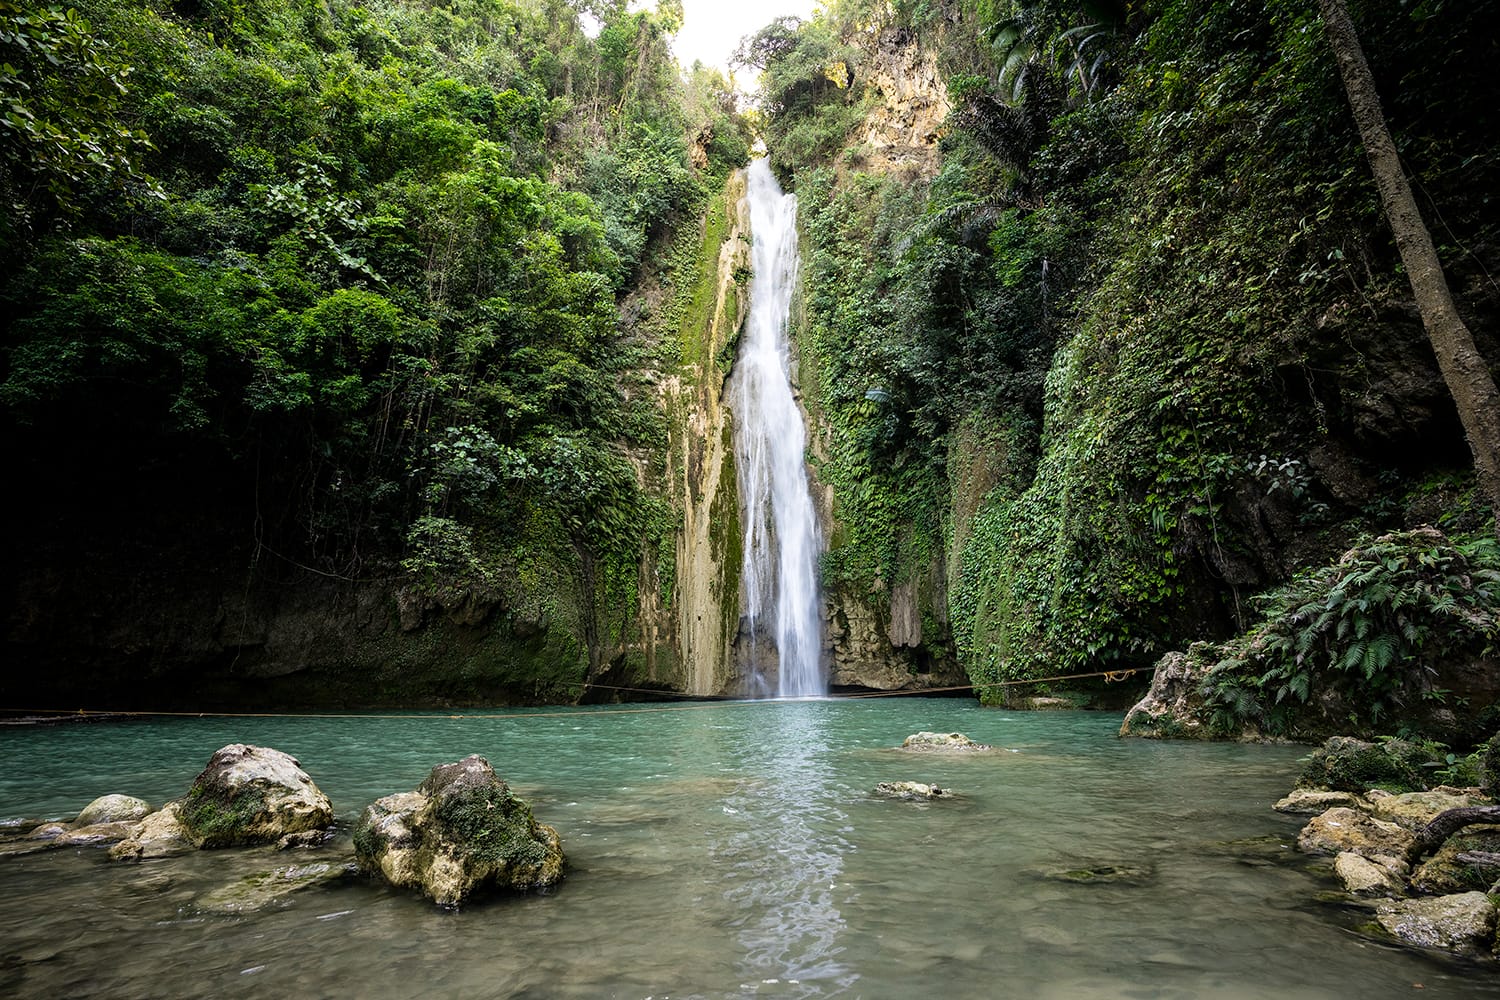 Mantayupan Falls in Barili, Cebu, Philippines